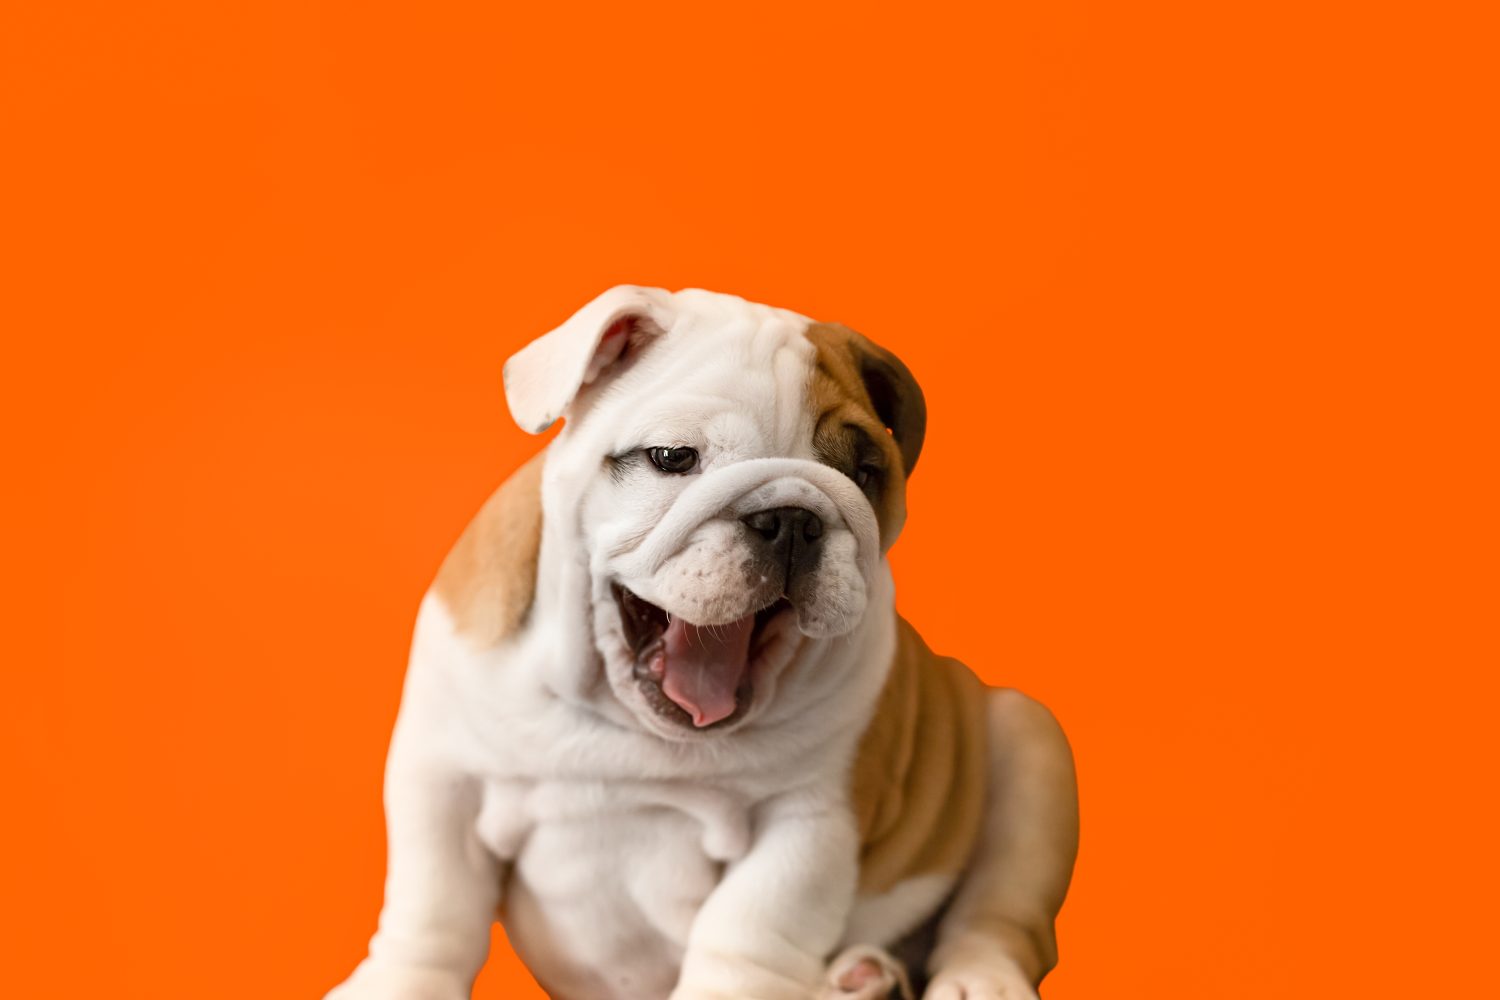 Cucciolo divertente del bulldog inglese su uno sfondo arancione.  Animali domestici.  Un cane di razza.